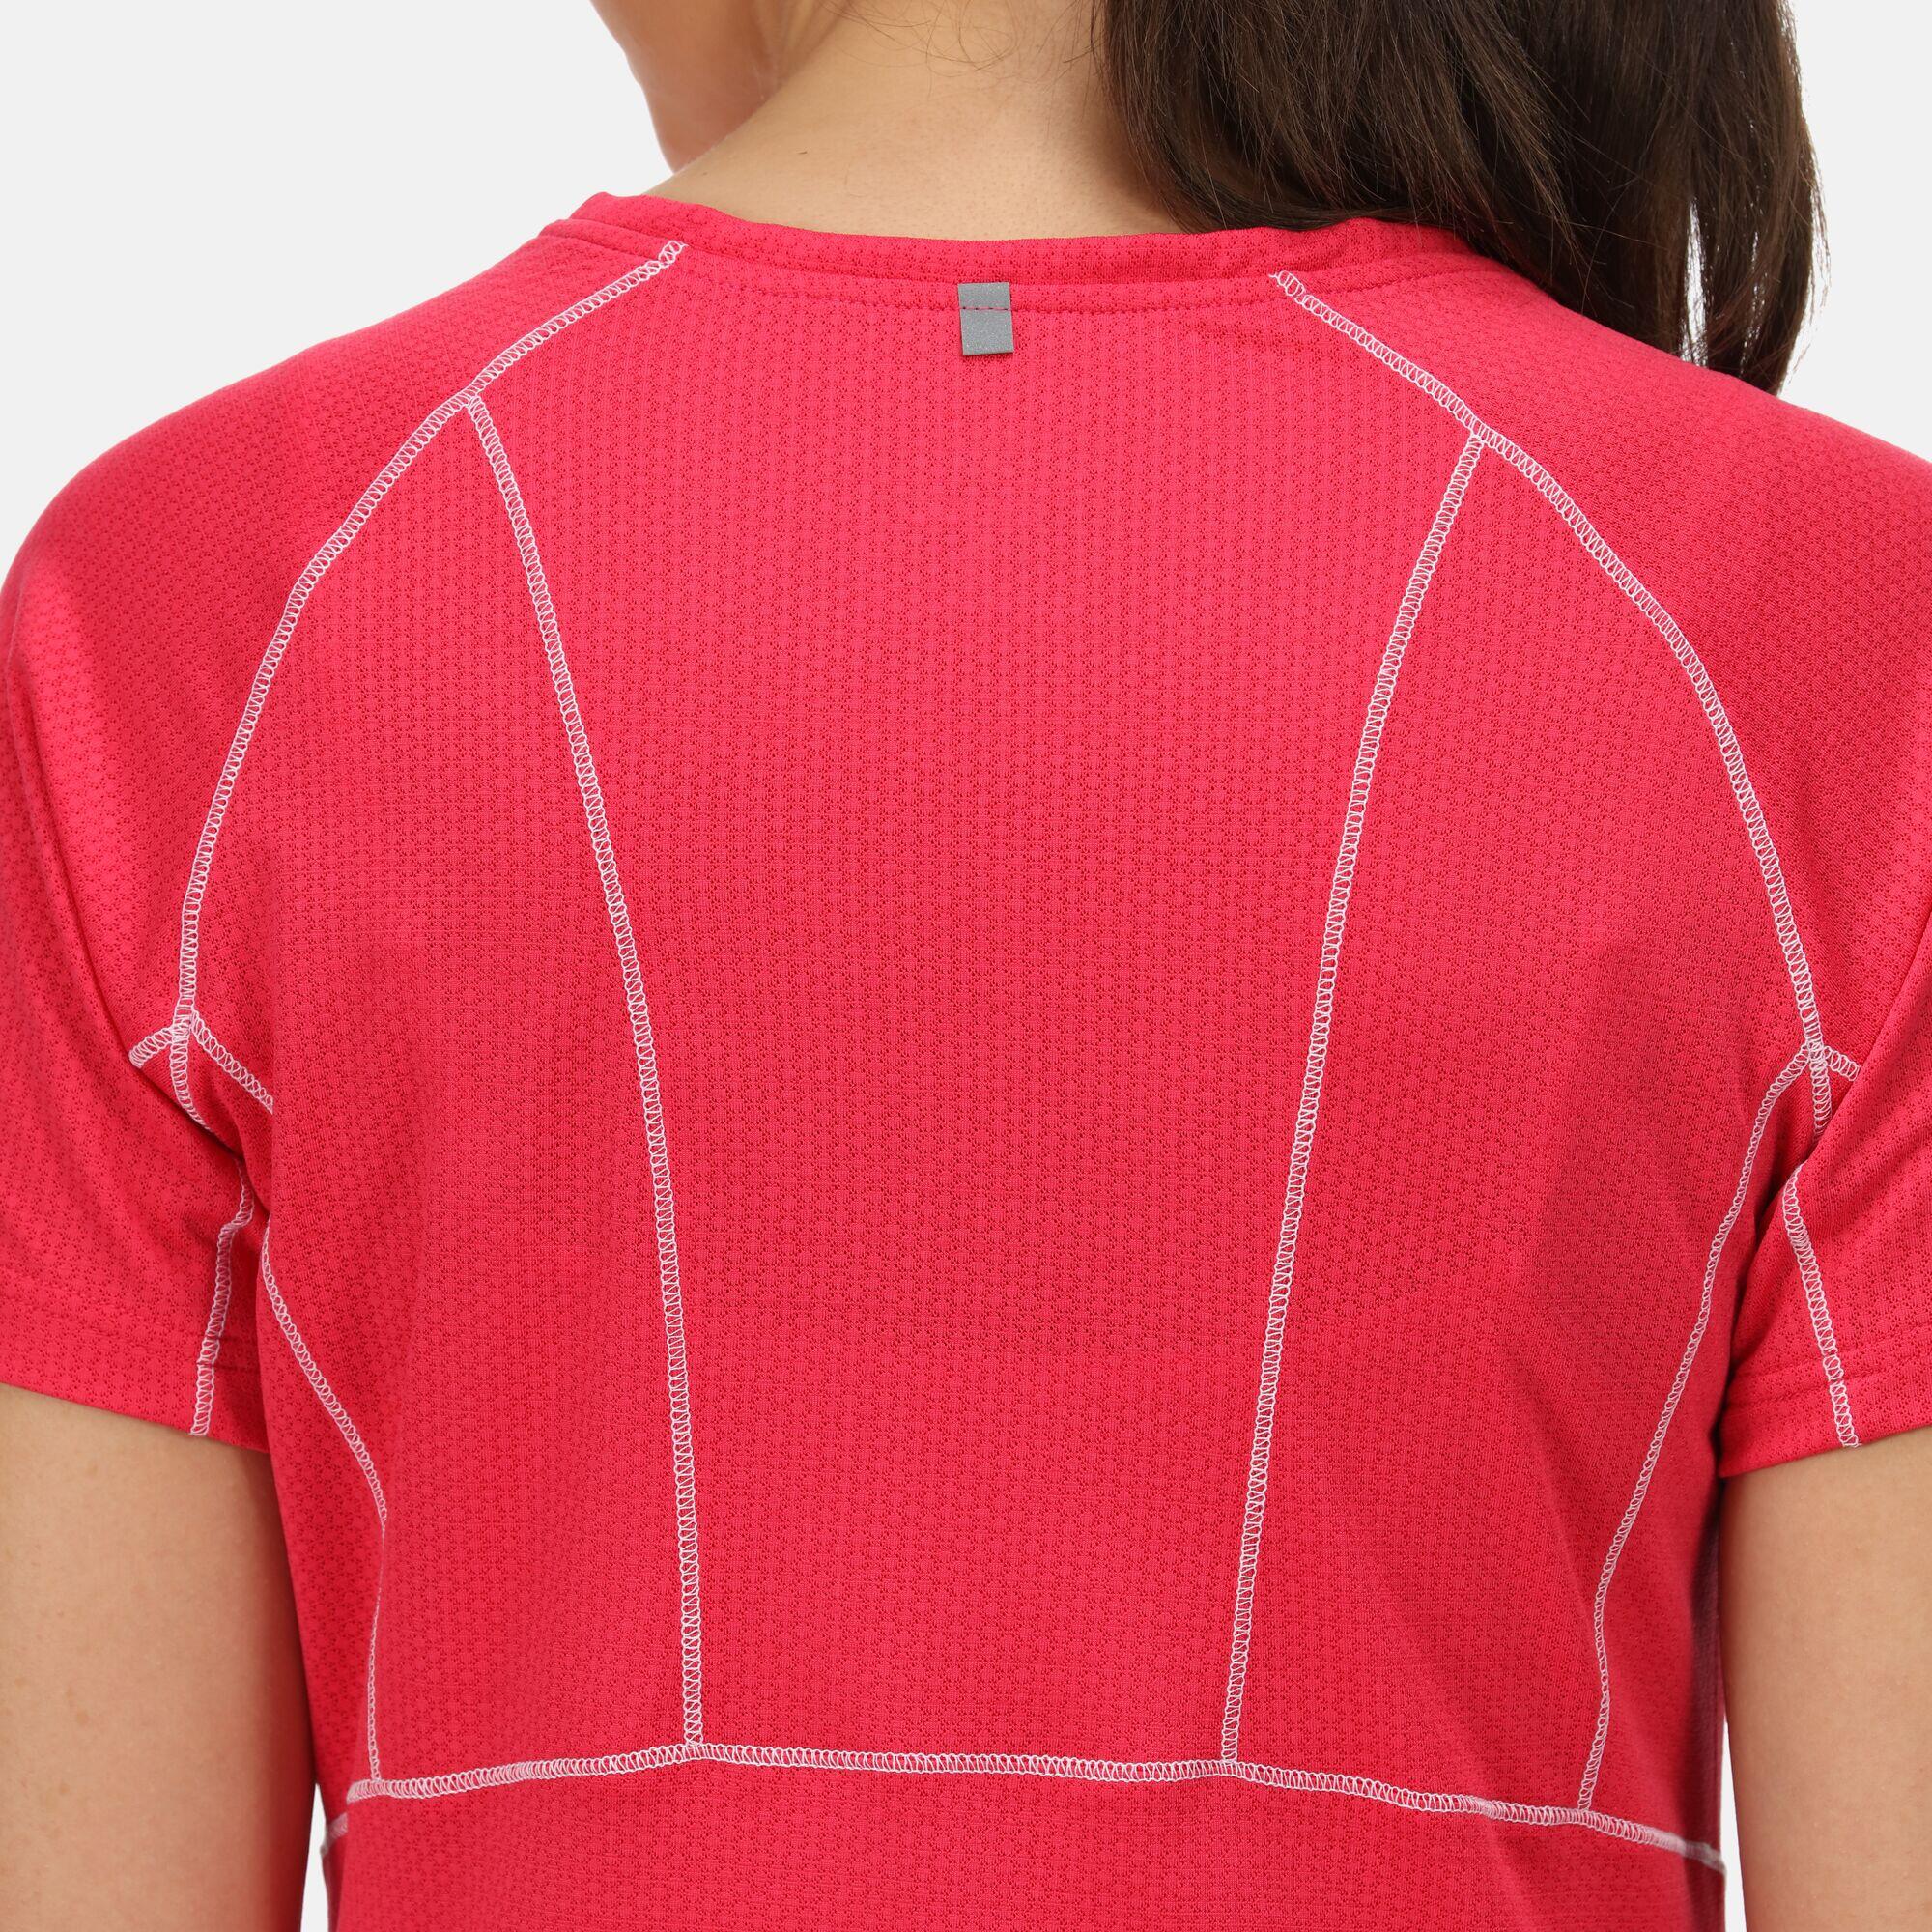 Devote II Women's Walking T-Shirt - Rethink Pink 4/5